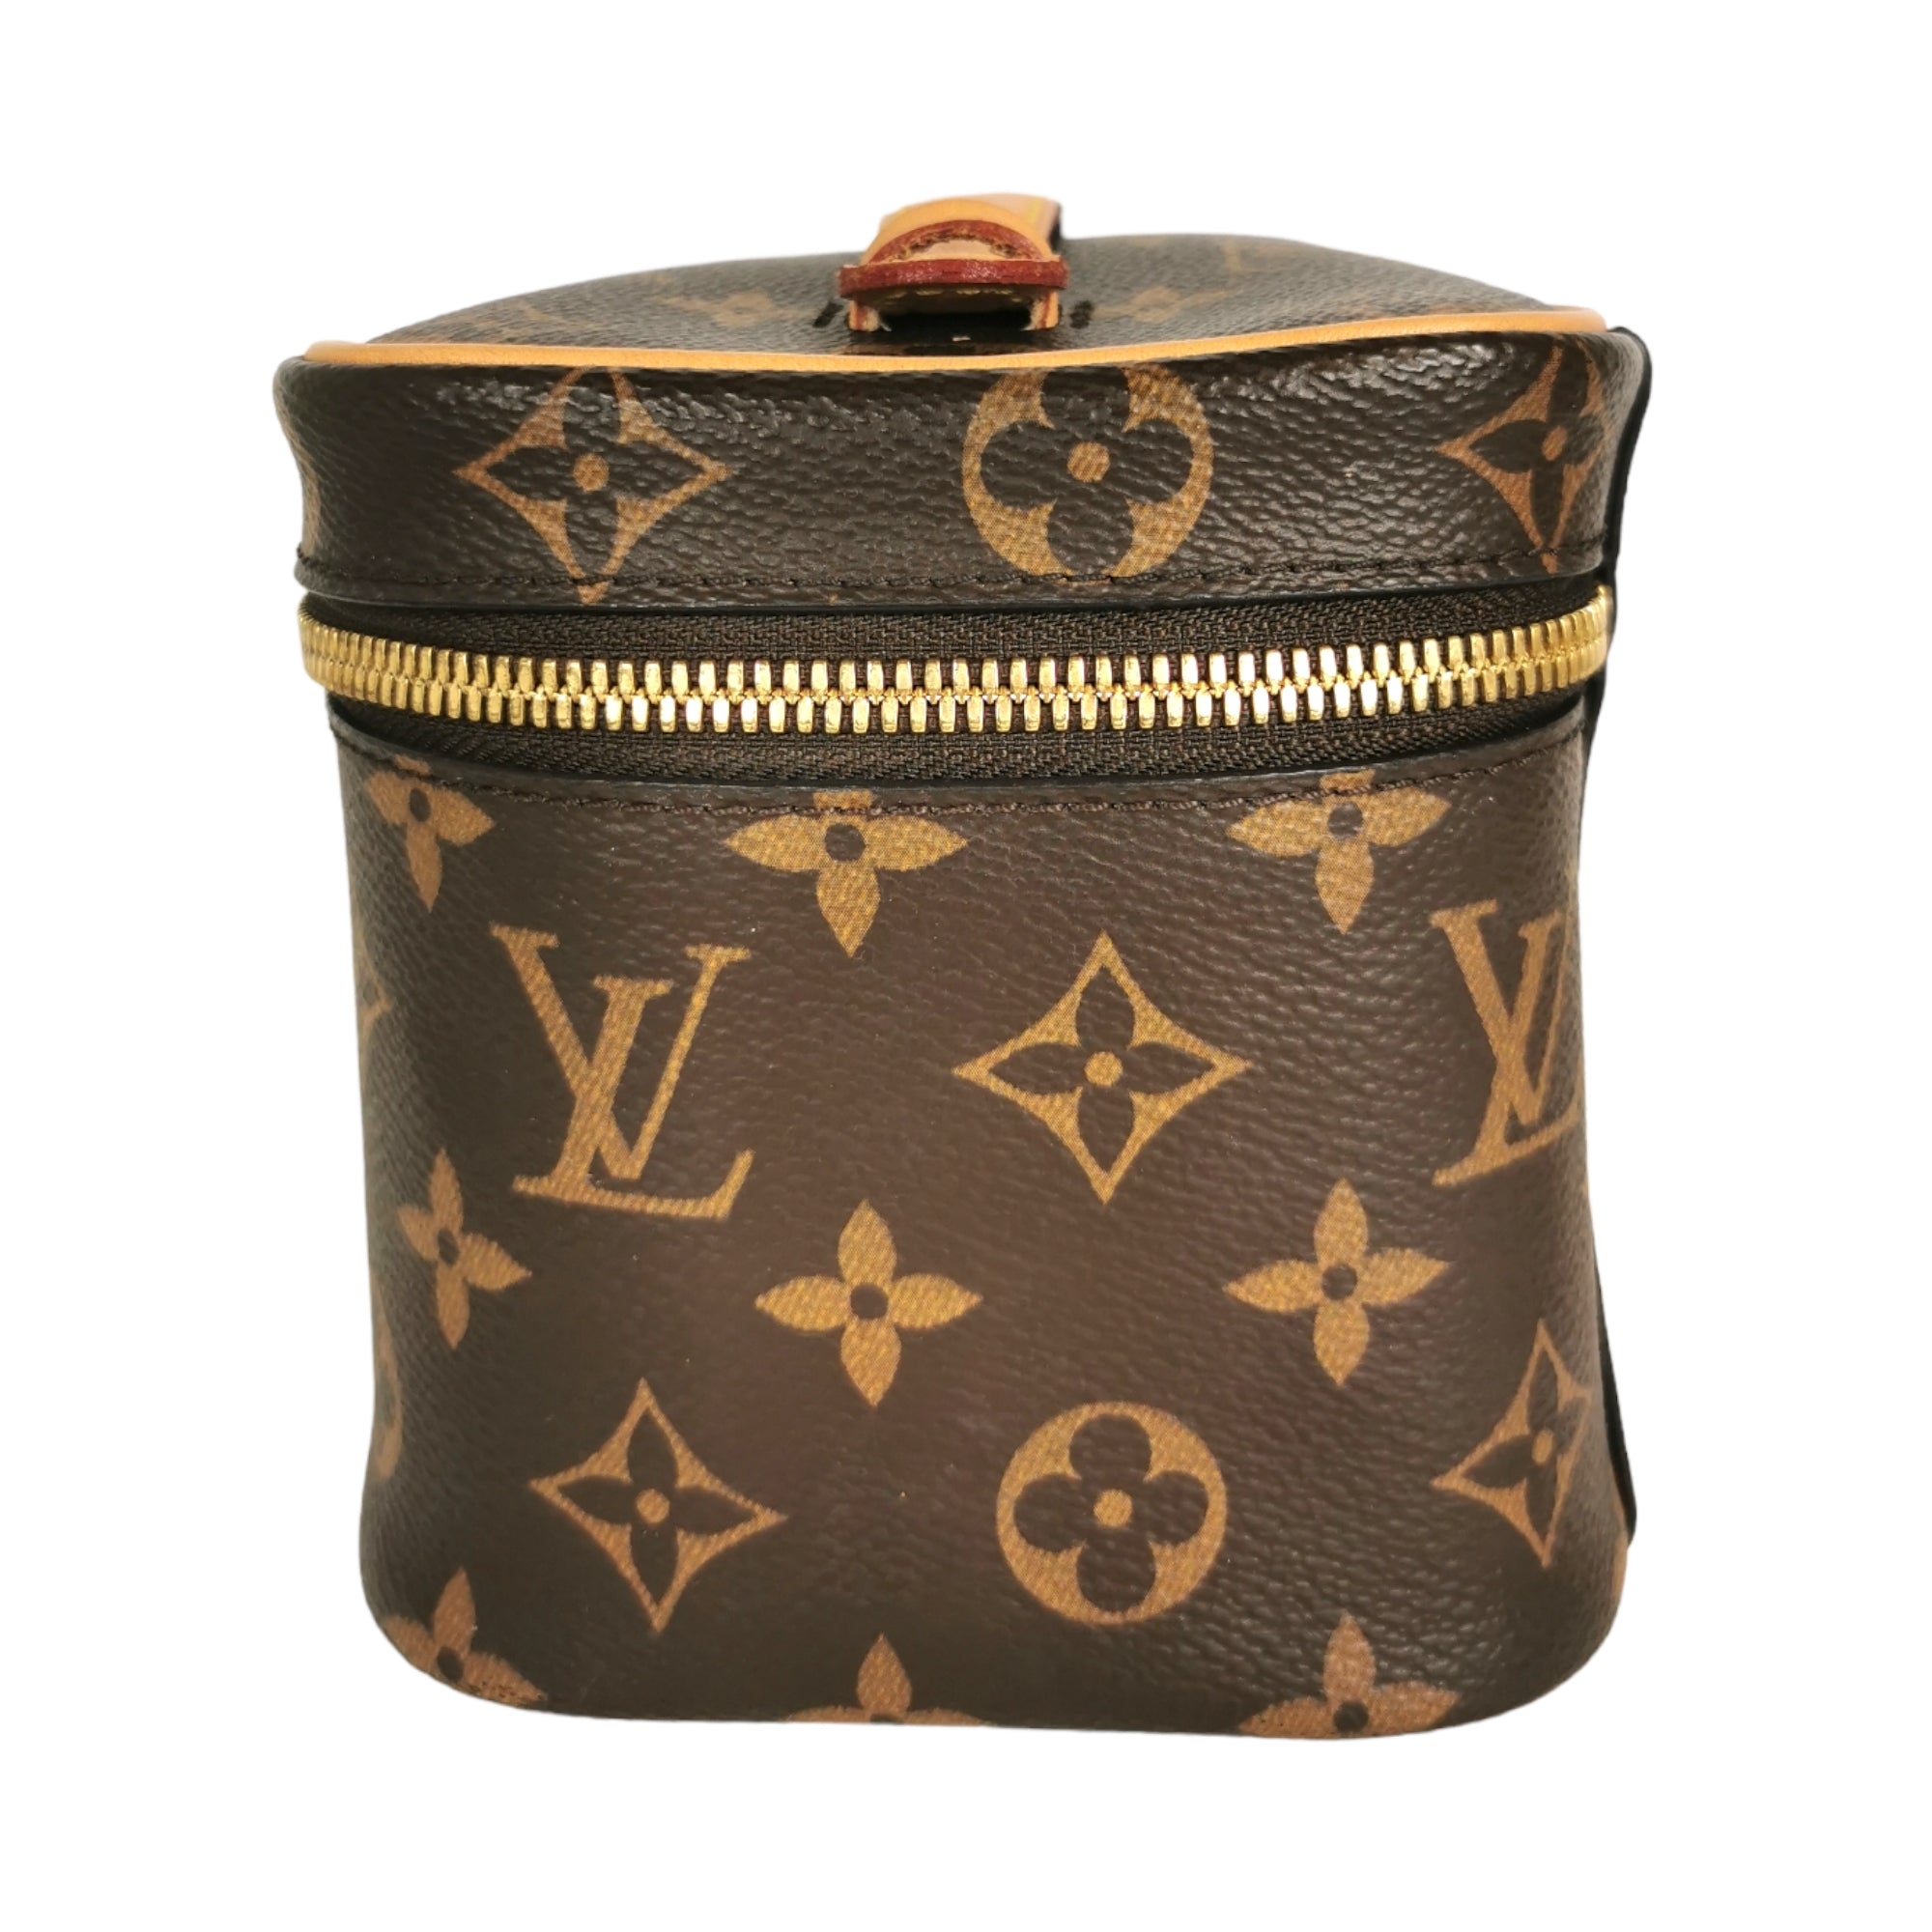 Louis Vuitton Nice Mini Toiletry Pouch Bag – ZAK BAGS ©️